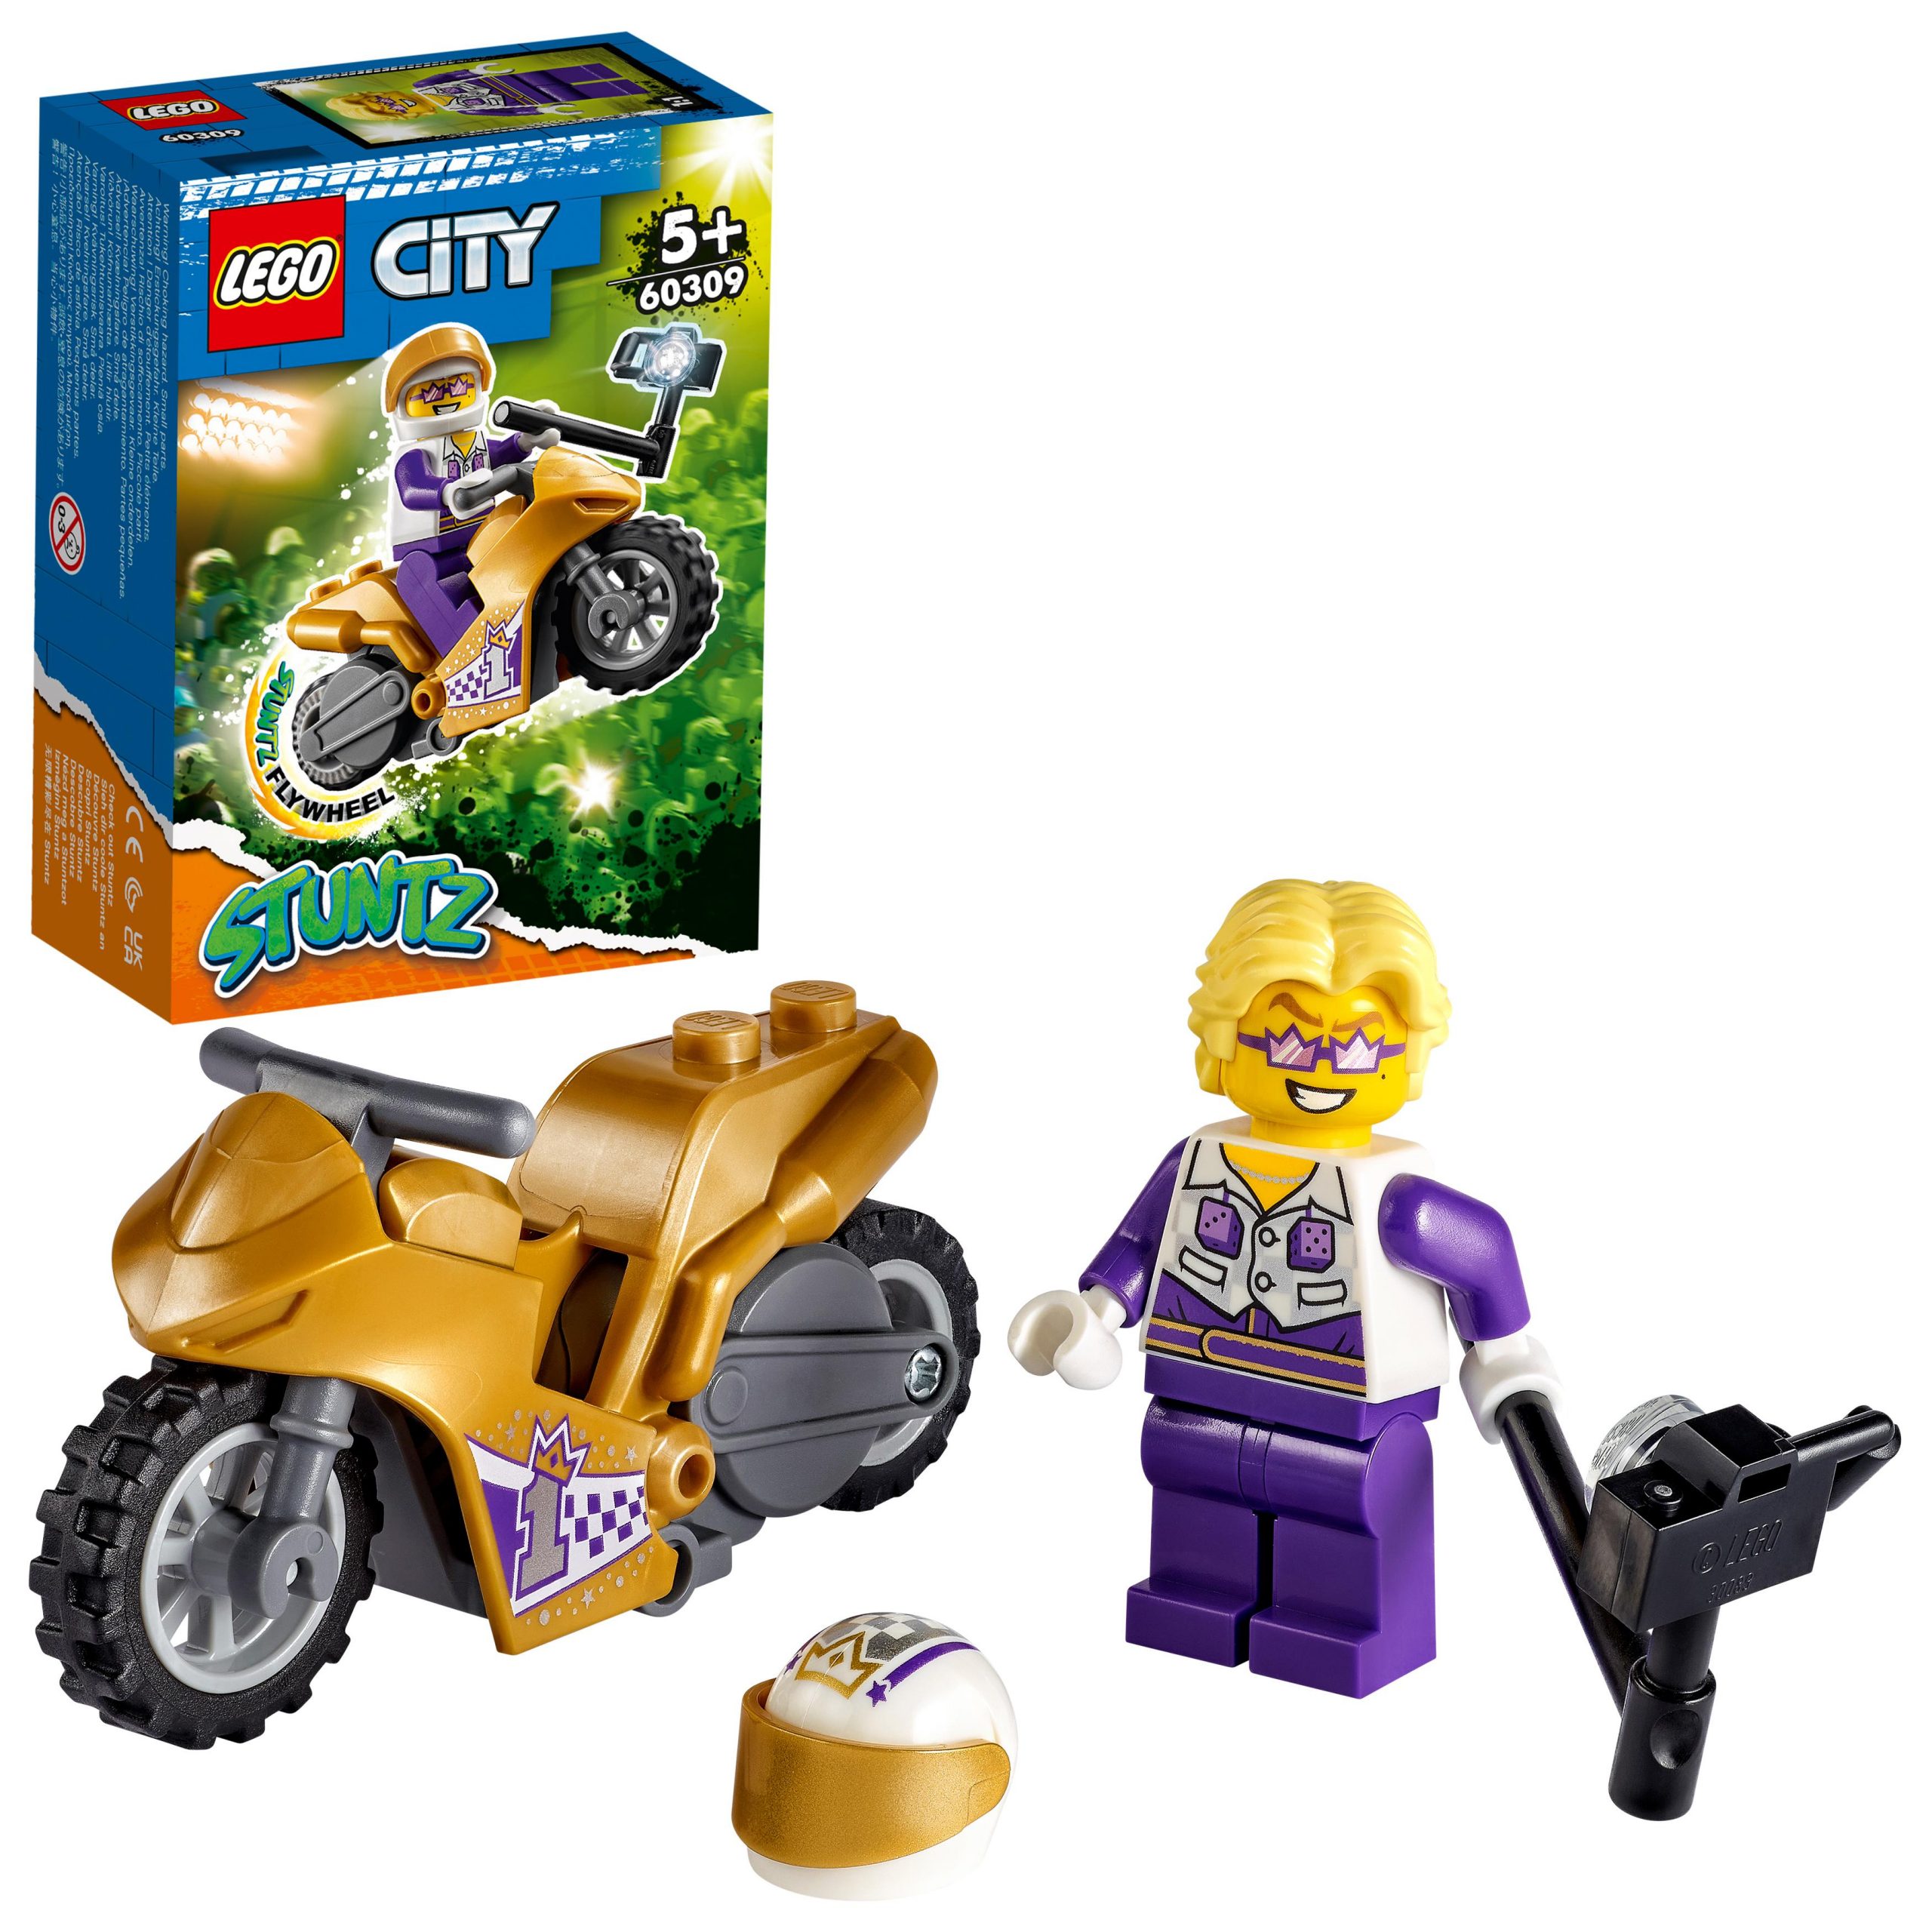 Lego city stuntz stunt bike dei selfie, moto giocattolo con funzione “carica e vai”, idea regalo per bambini dai 5 anni, 60309 - LEGO CITY, LEGO CITY STUNTZ, Lego